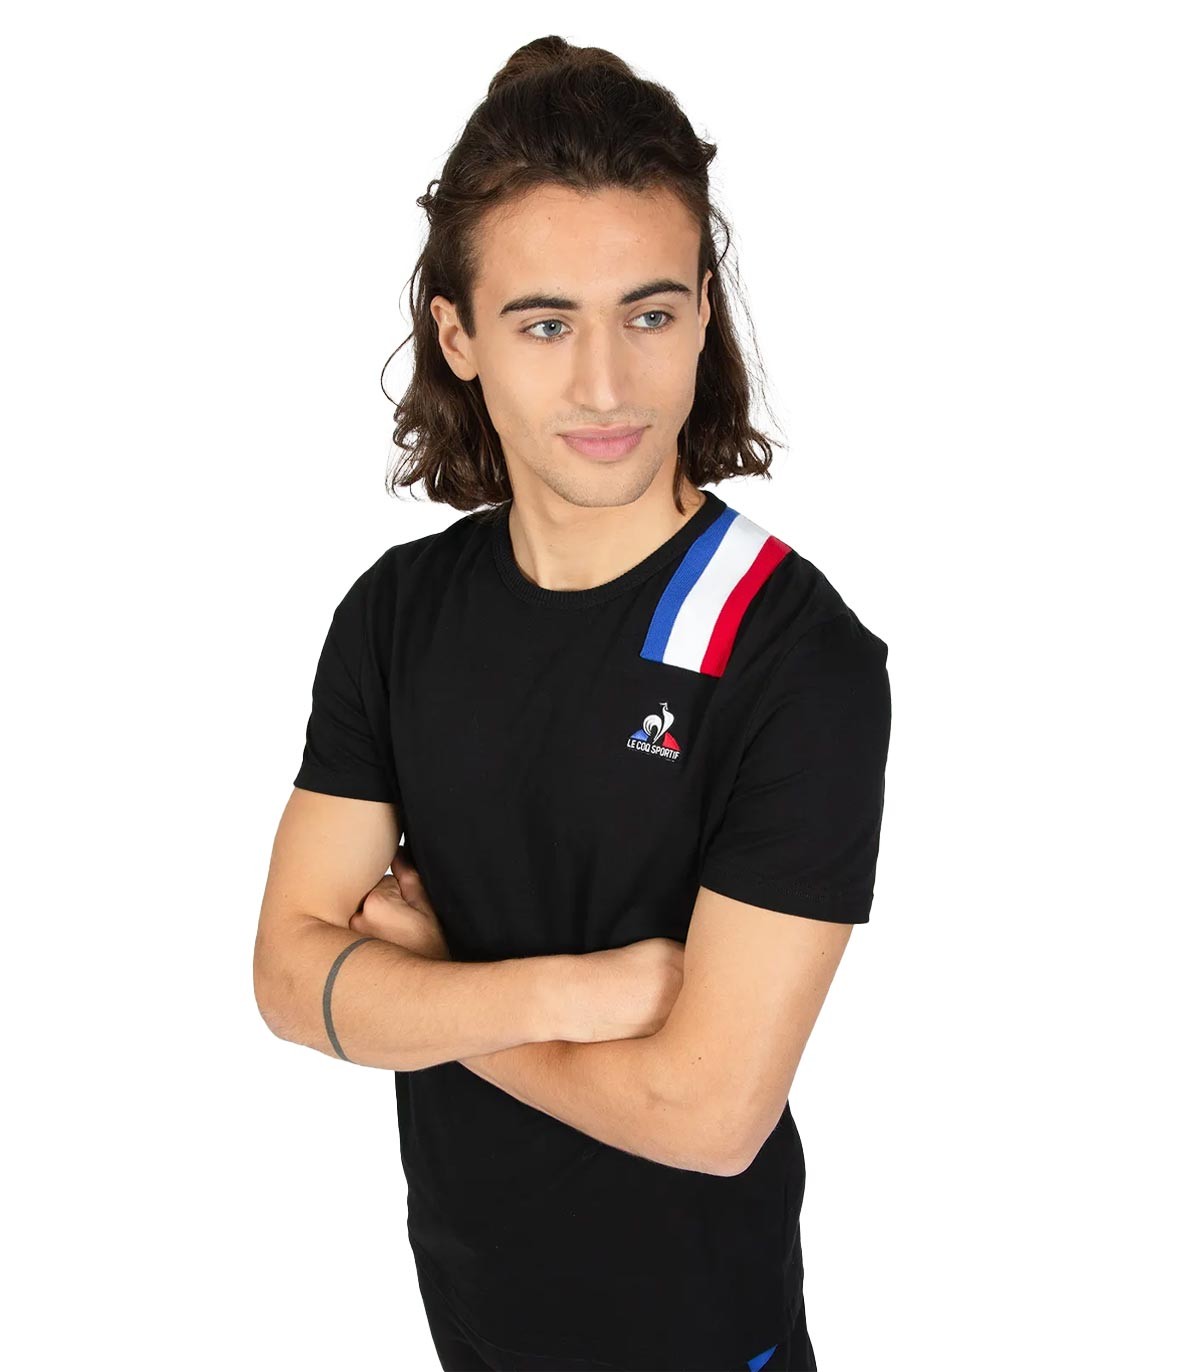 Le Coq Sportif - Camiseta Unisex Tricolore - Negro